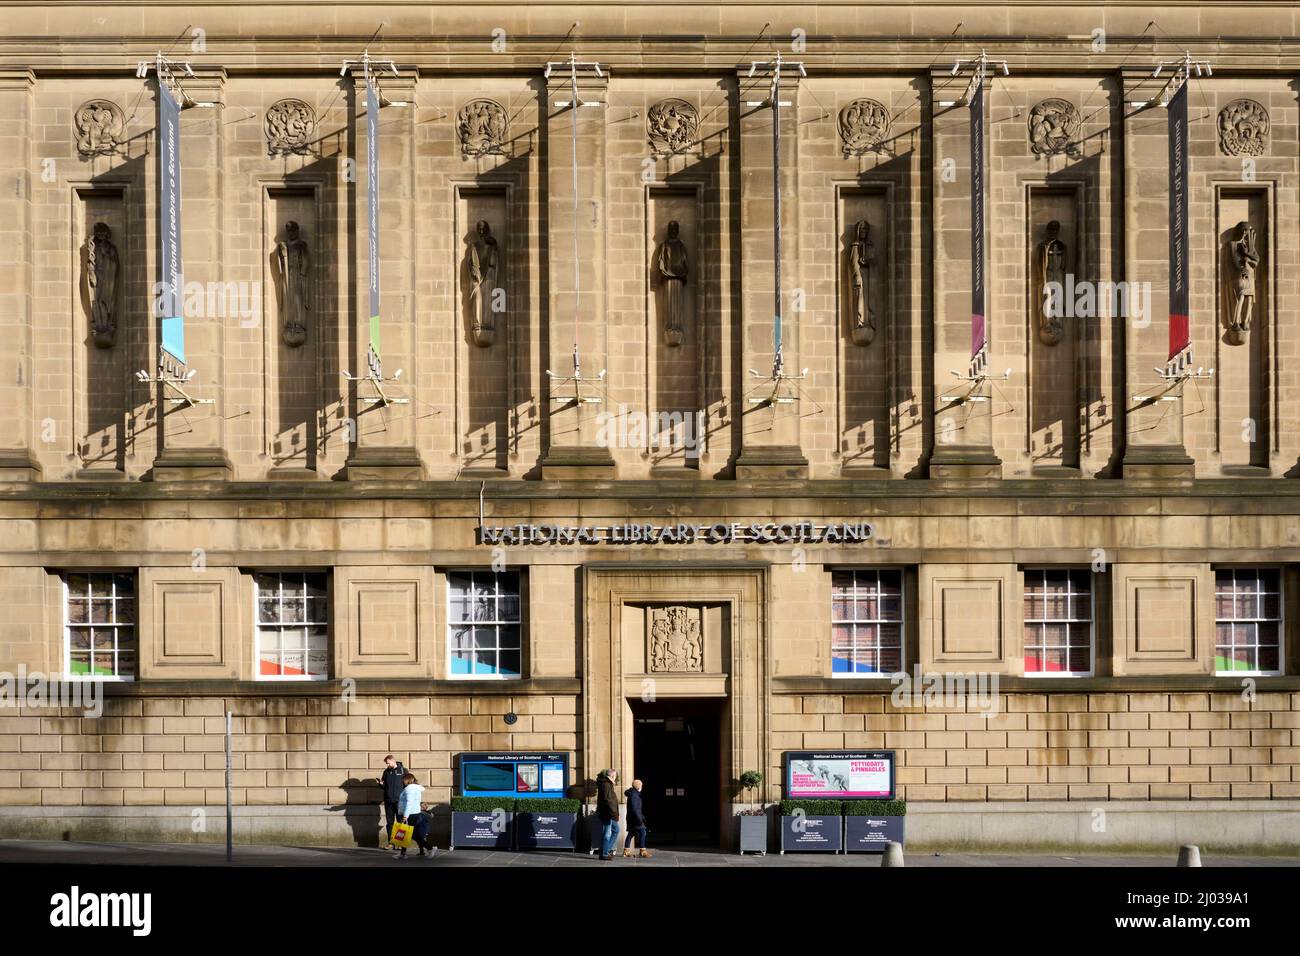 La impresionante fachada de la Biblioteca Nacional de Escocia, Edimburgo, Escocia, Reino Unido Foto de stock